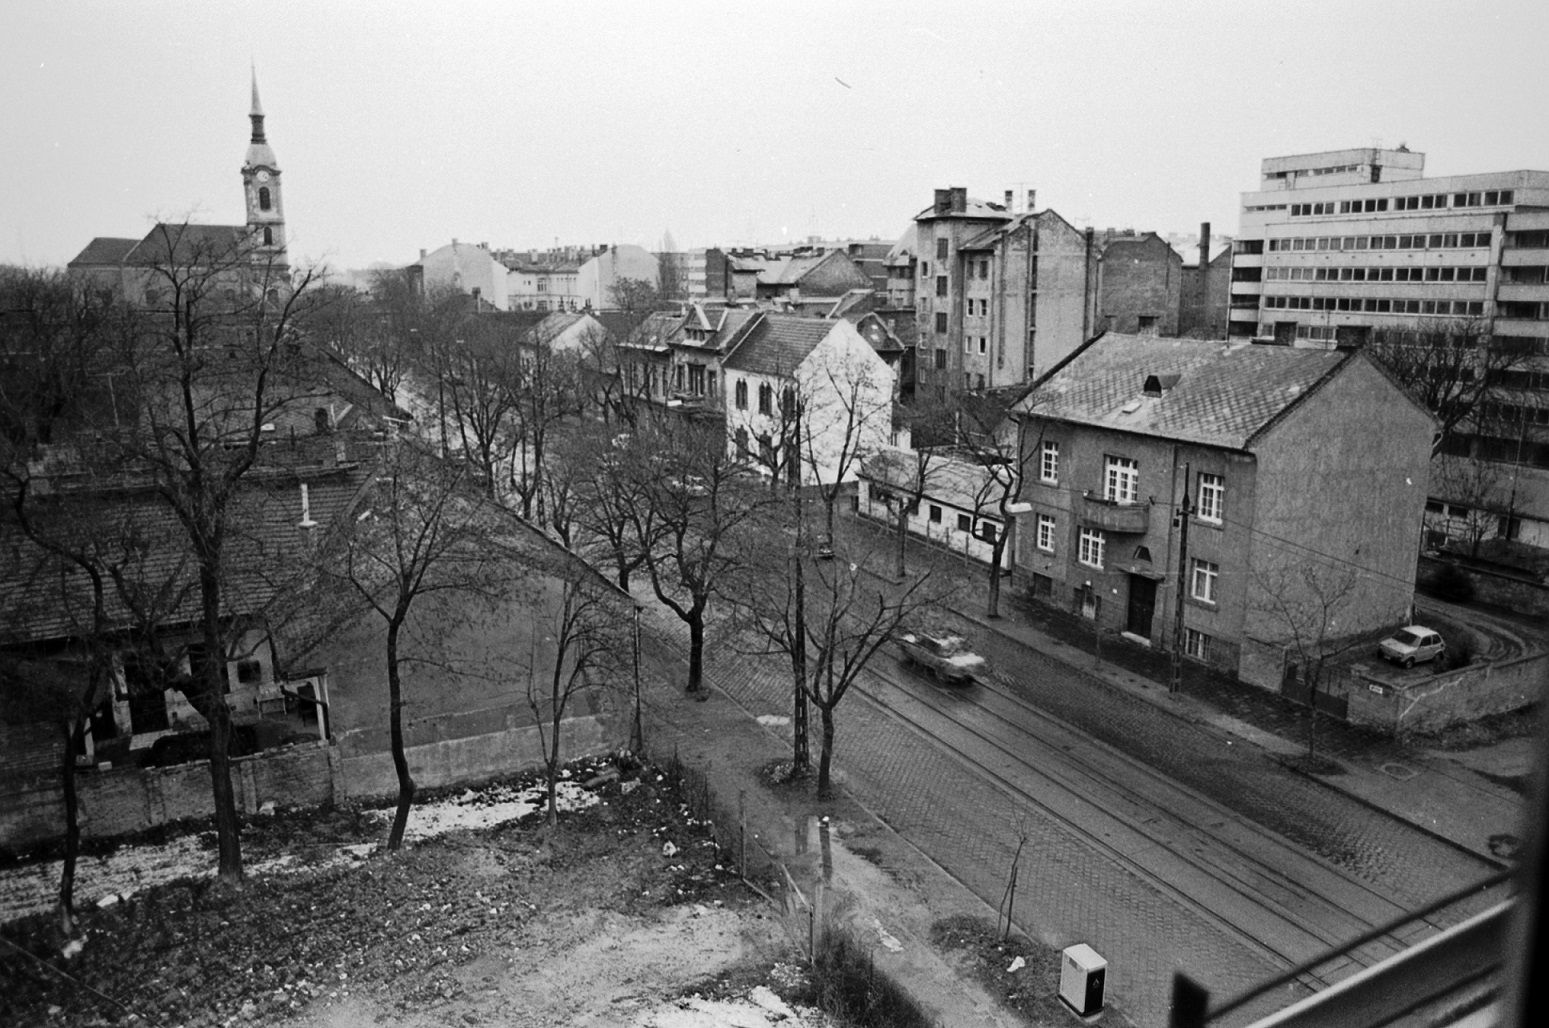 Bécsi út, balra az Újlaki templom 1980-ban